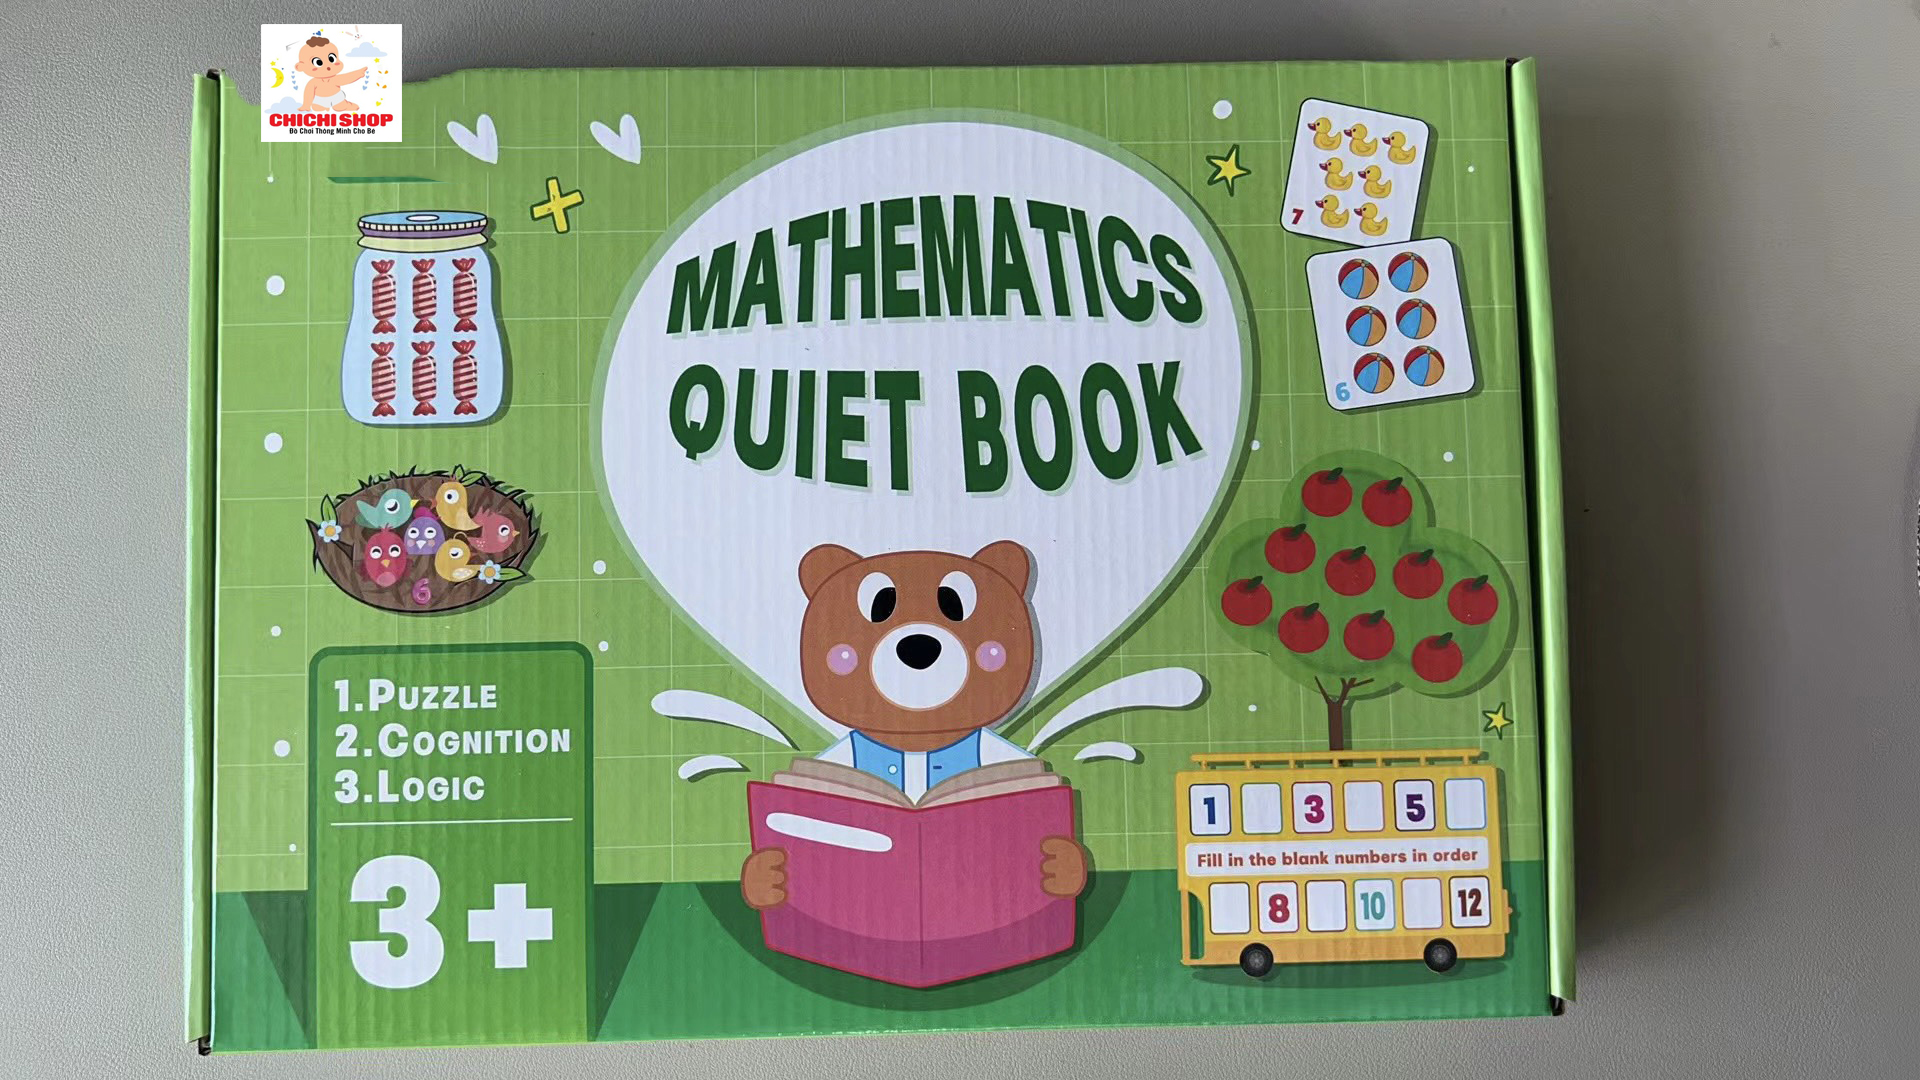 Học Liệu Toán Học Thông Minh Đầu Đời Cho Bé Mathematics Quiet Book, Học Liệu Bóc Dán Toán Montessori 16 Chủ Đề